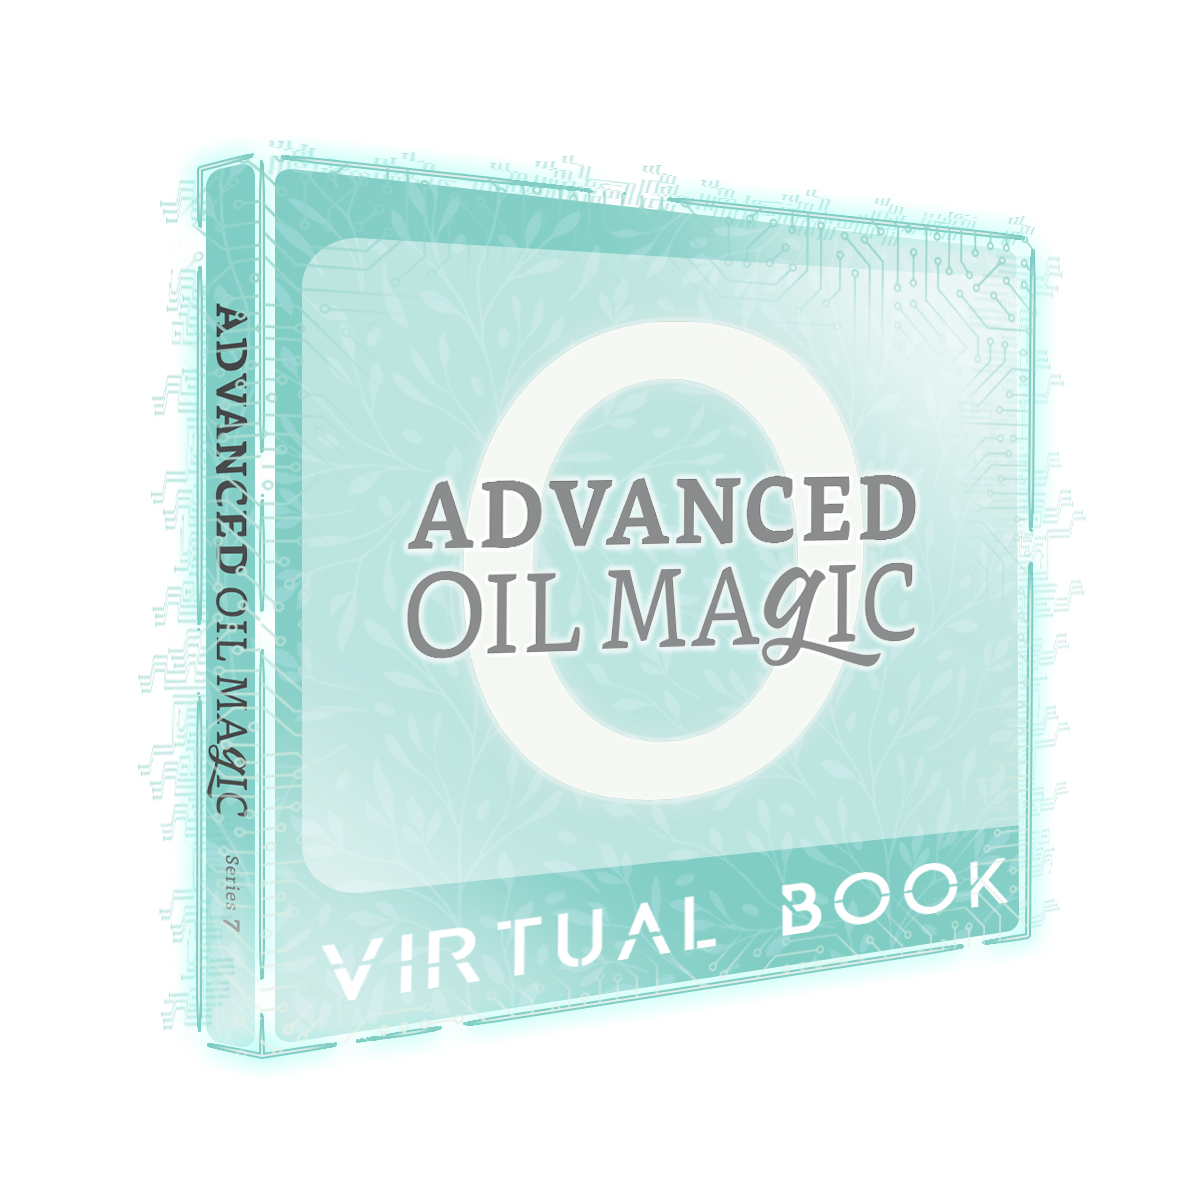 ADVANCED Oil Magic Series 7 [Virtual Book]